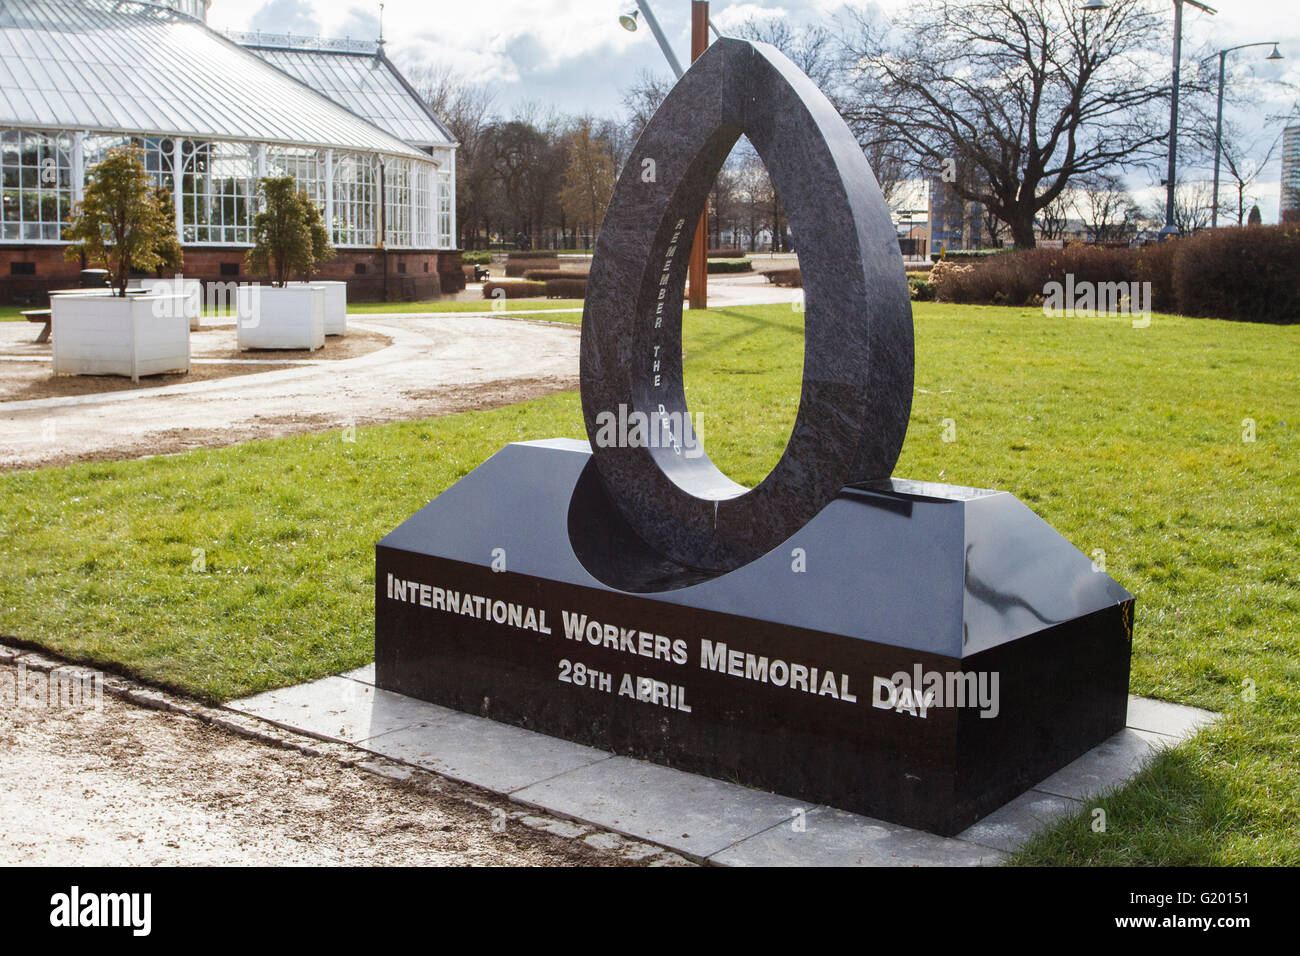 Los trabajadores internacionales Memorial Day el 28 de abril, la escultura en pueblos Palace en Glasgow green Foto de stock